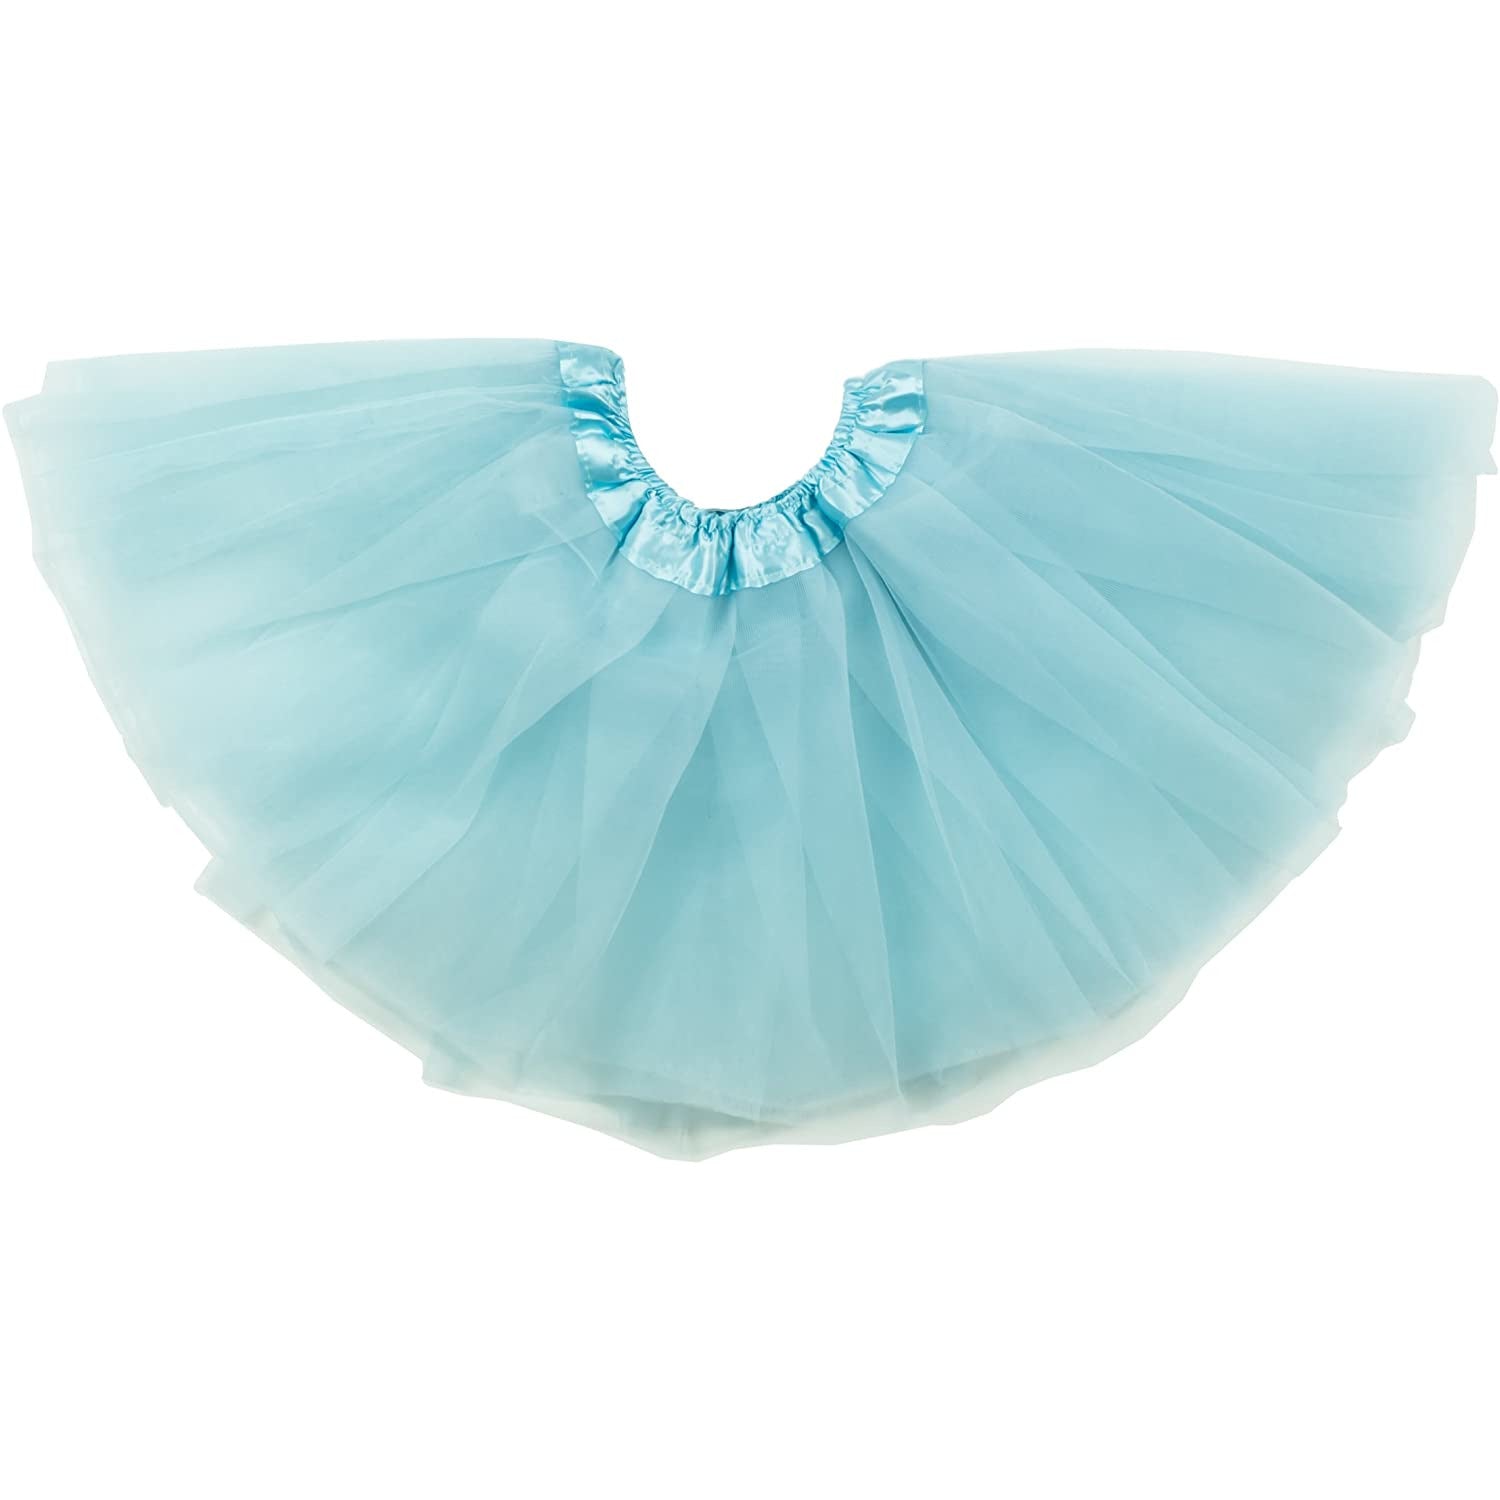 Dancina Tulle Skirt for Girls 2-12 years in Sky Blue